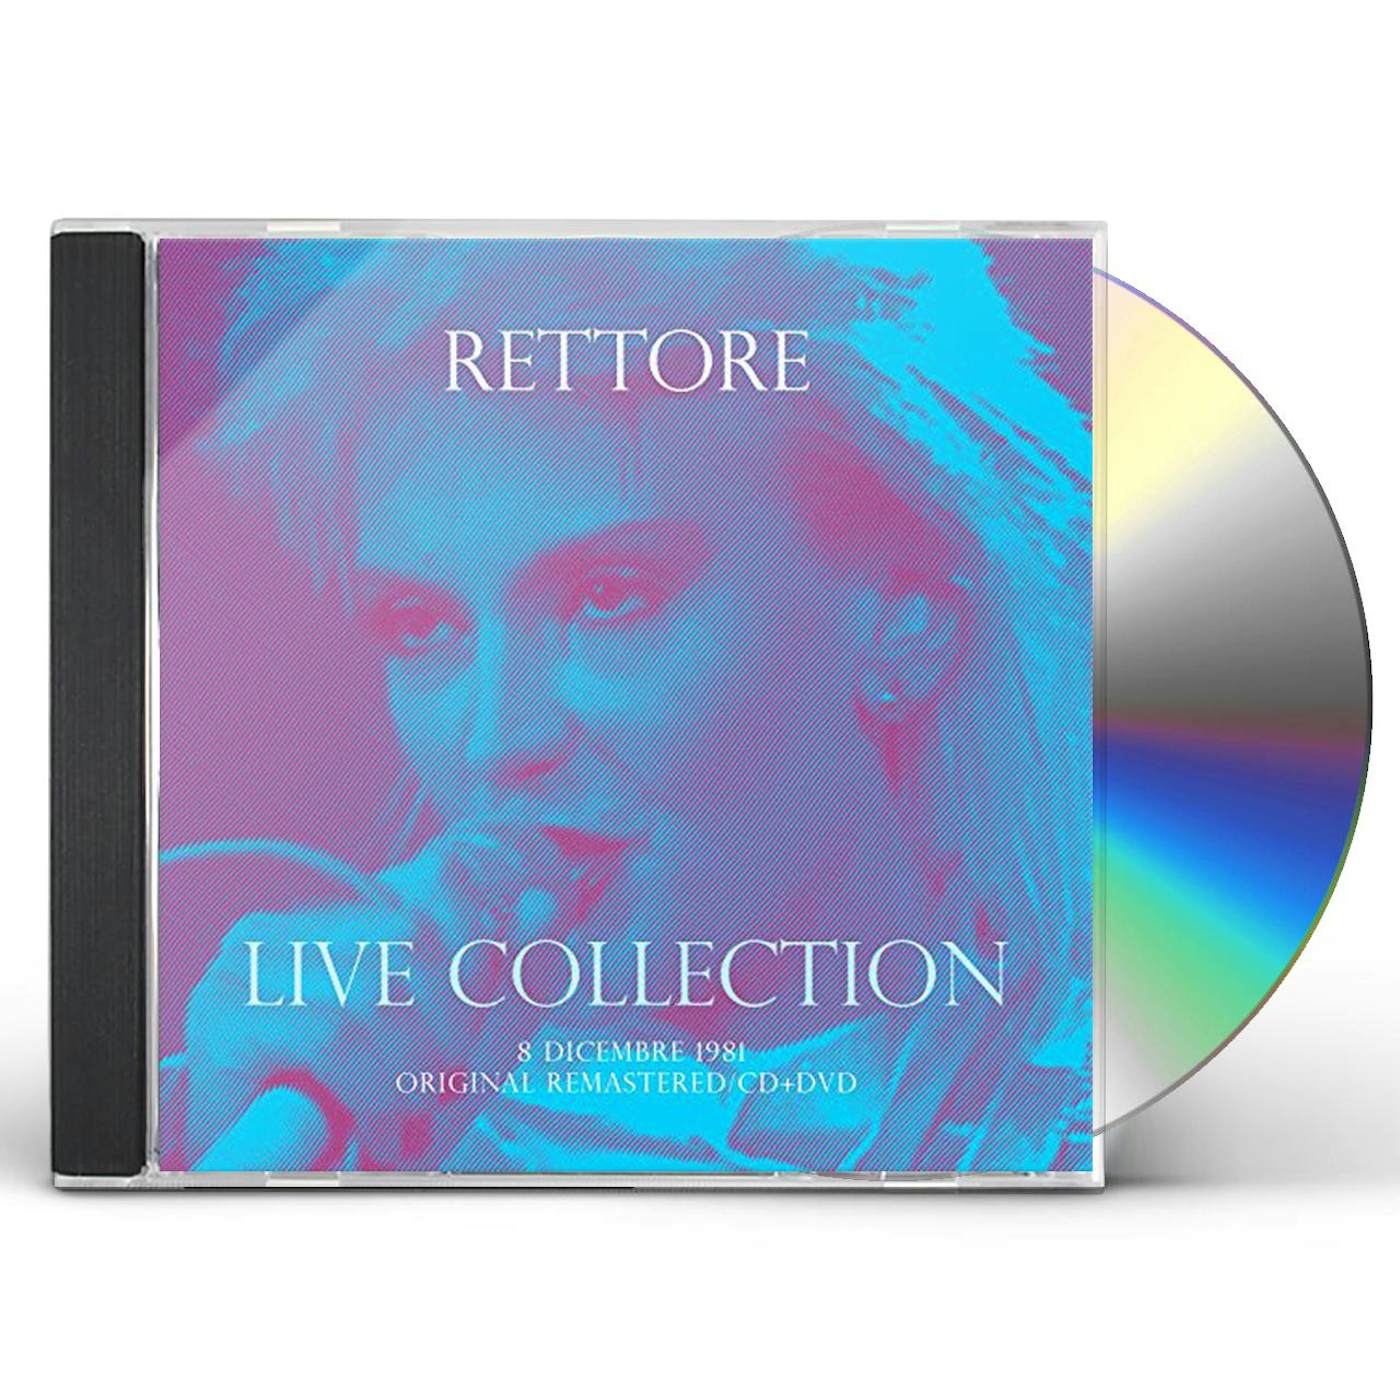 Donatella Rettore CONCERTO LIVE AT RSI (08 DICEMBRE 1981) - CD+DVD D CD